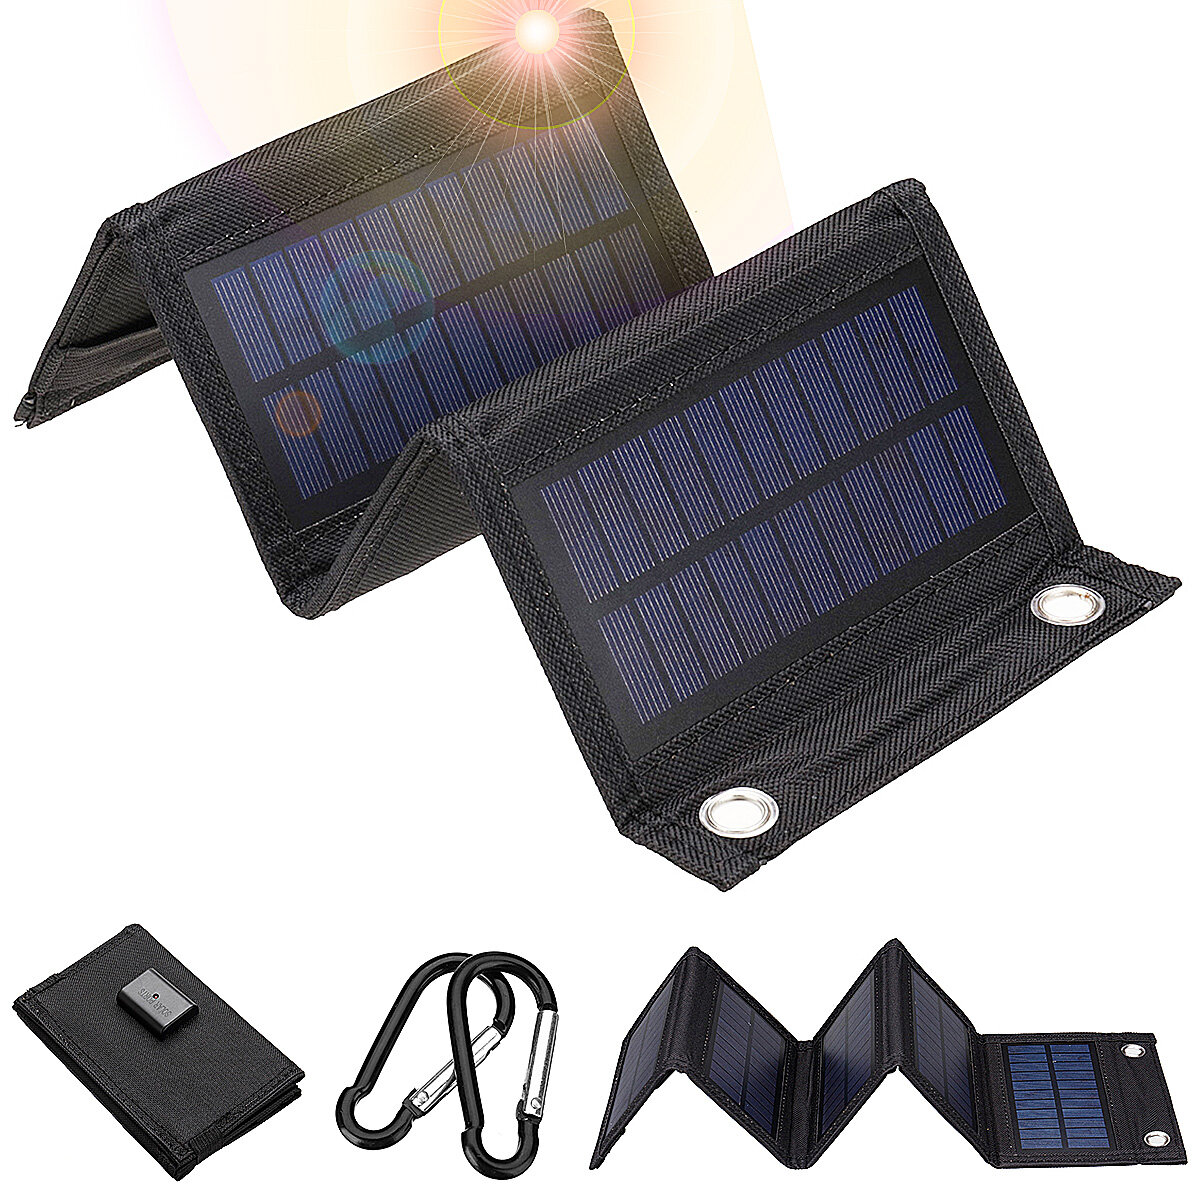 10w/7.5w/6w Pieghevole solare Pannello solare Caricabatterie 5V USB Protable solare Alimentazione mobile Per Smartphone campeggio Esterno